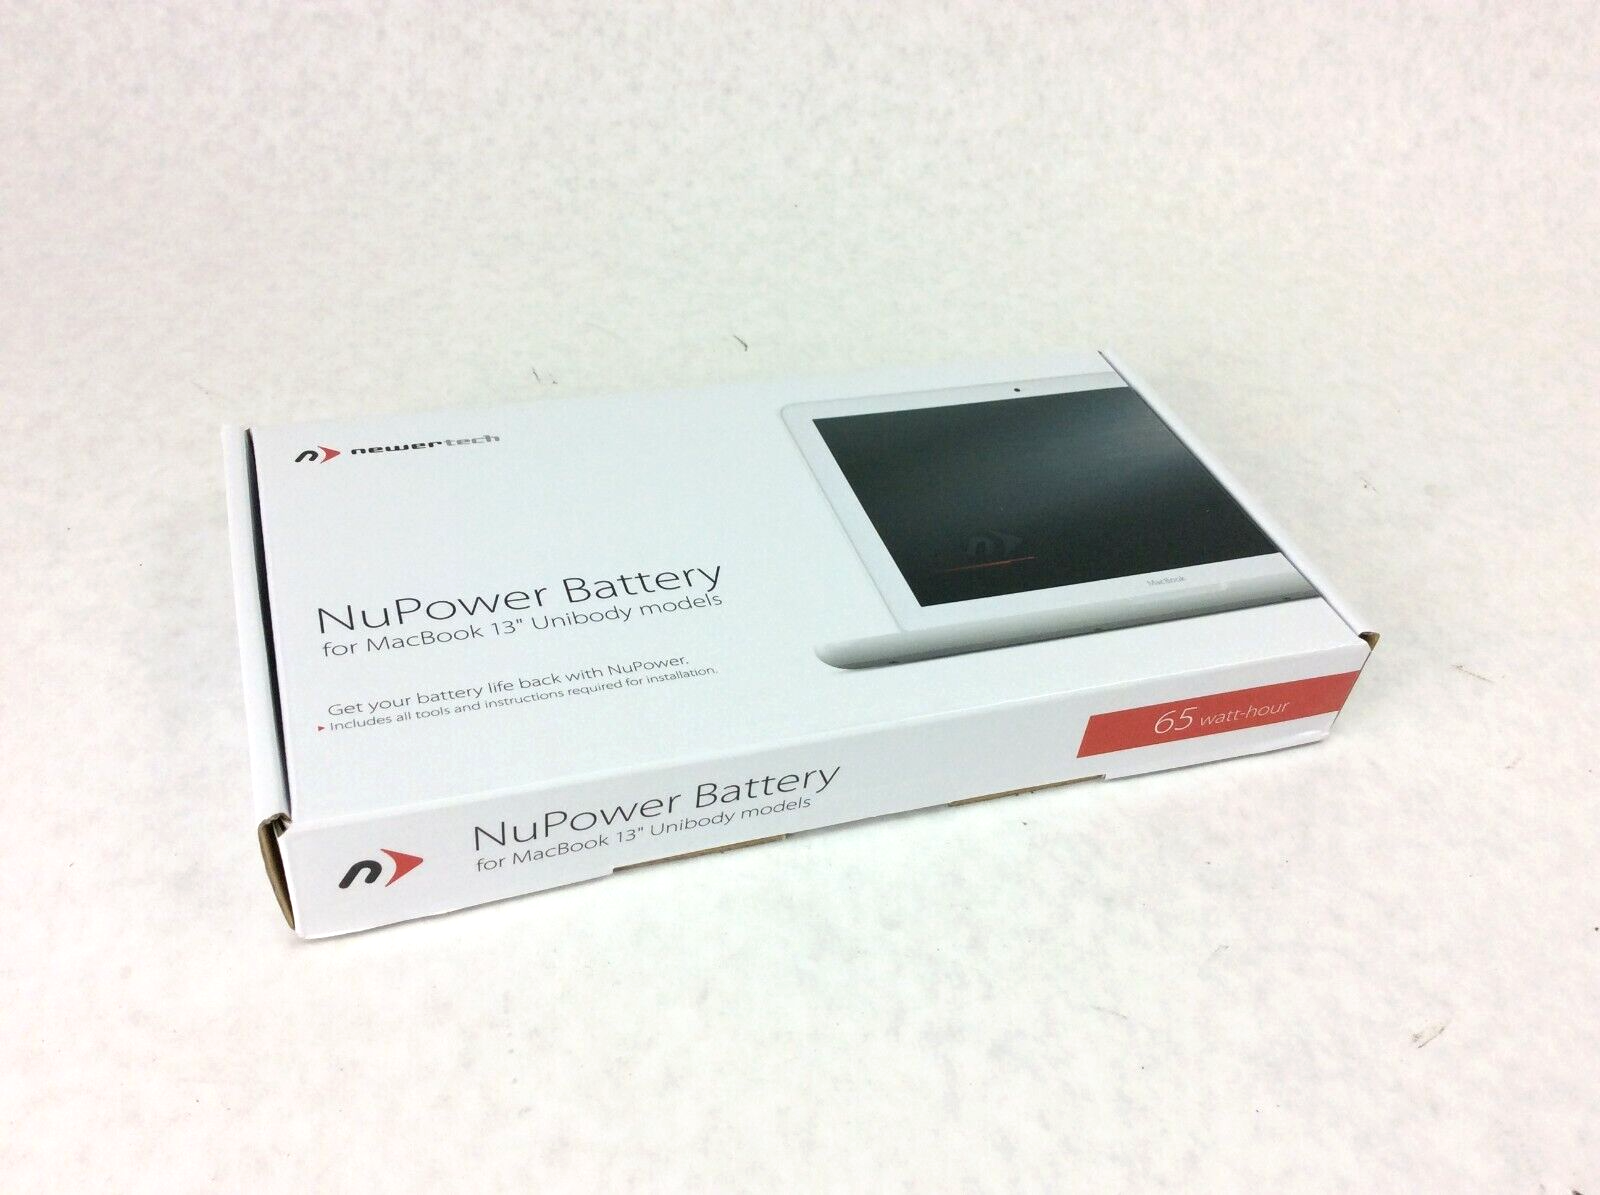 Newertech NuPower Battery 13" Unibody Apple MacBook 6.1 7.1 A1331 Battery 65W